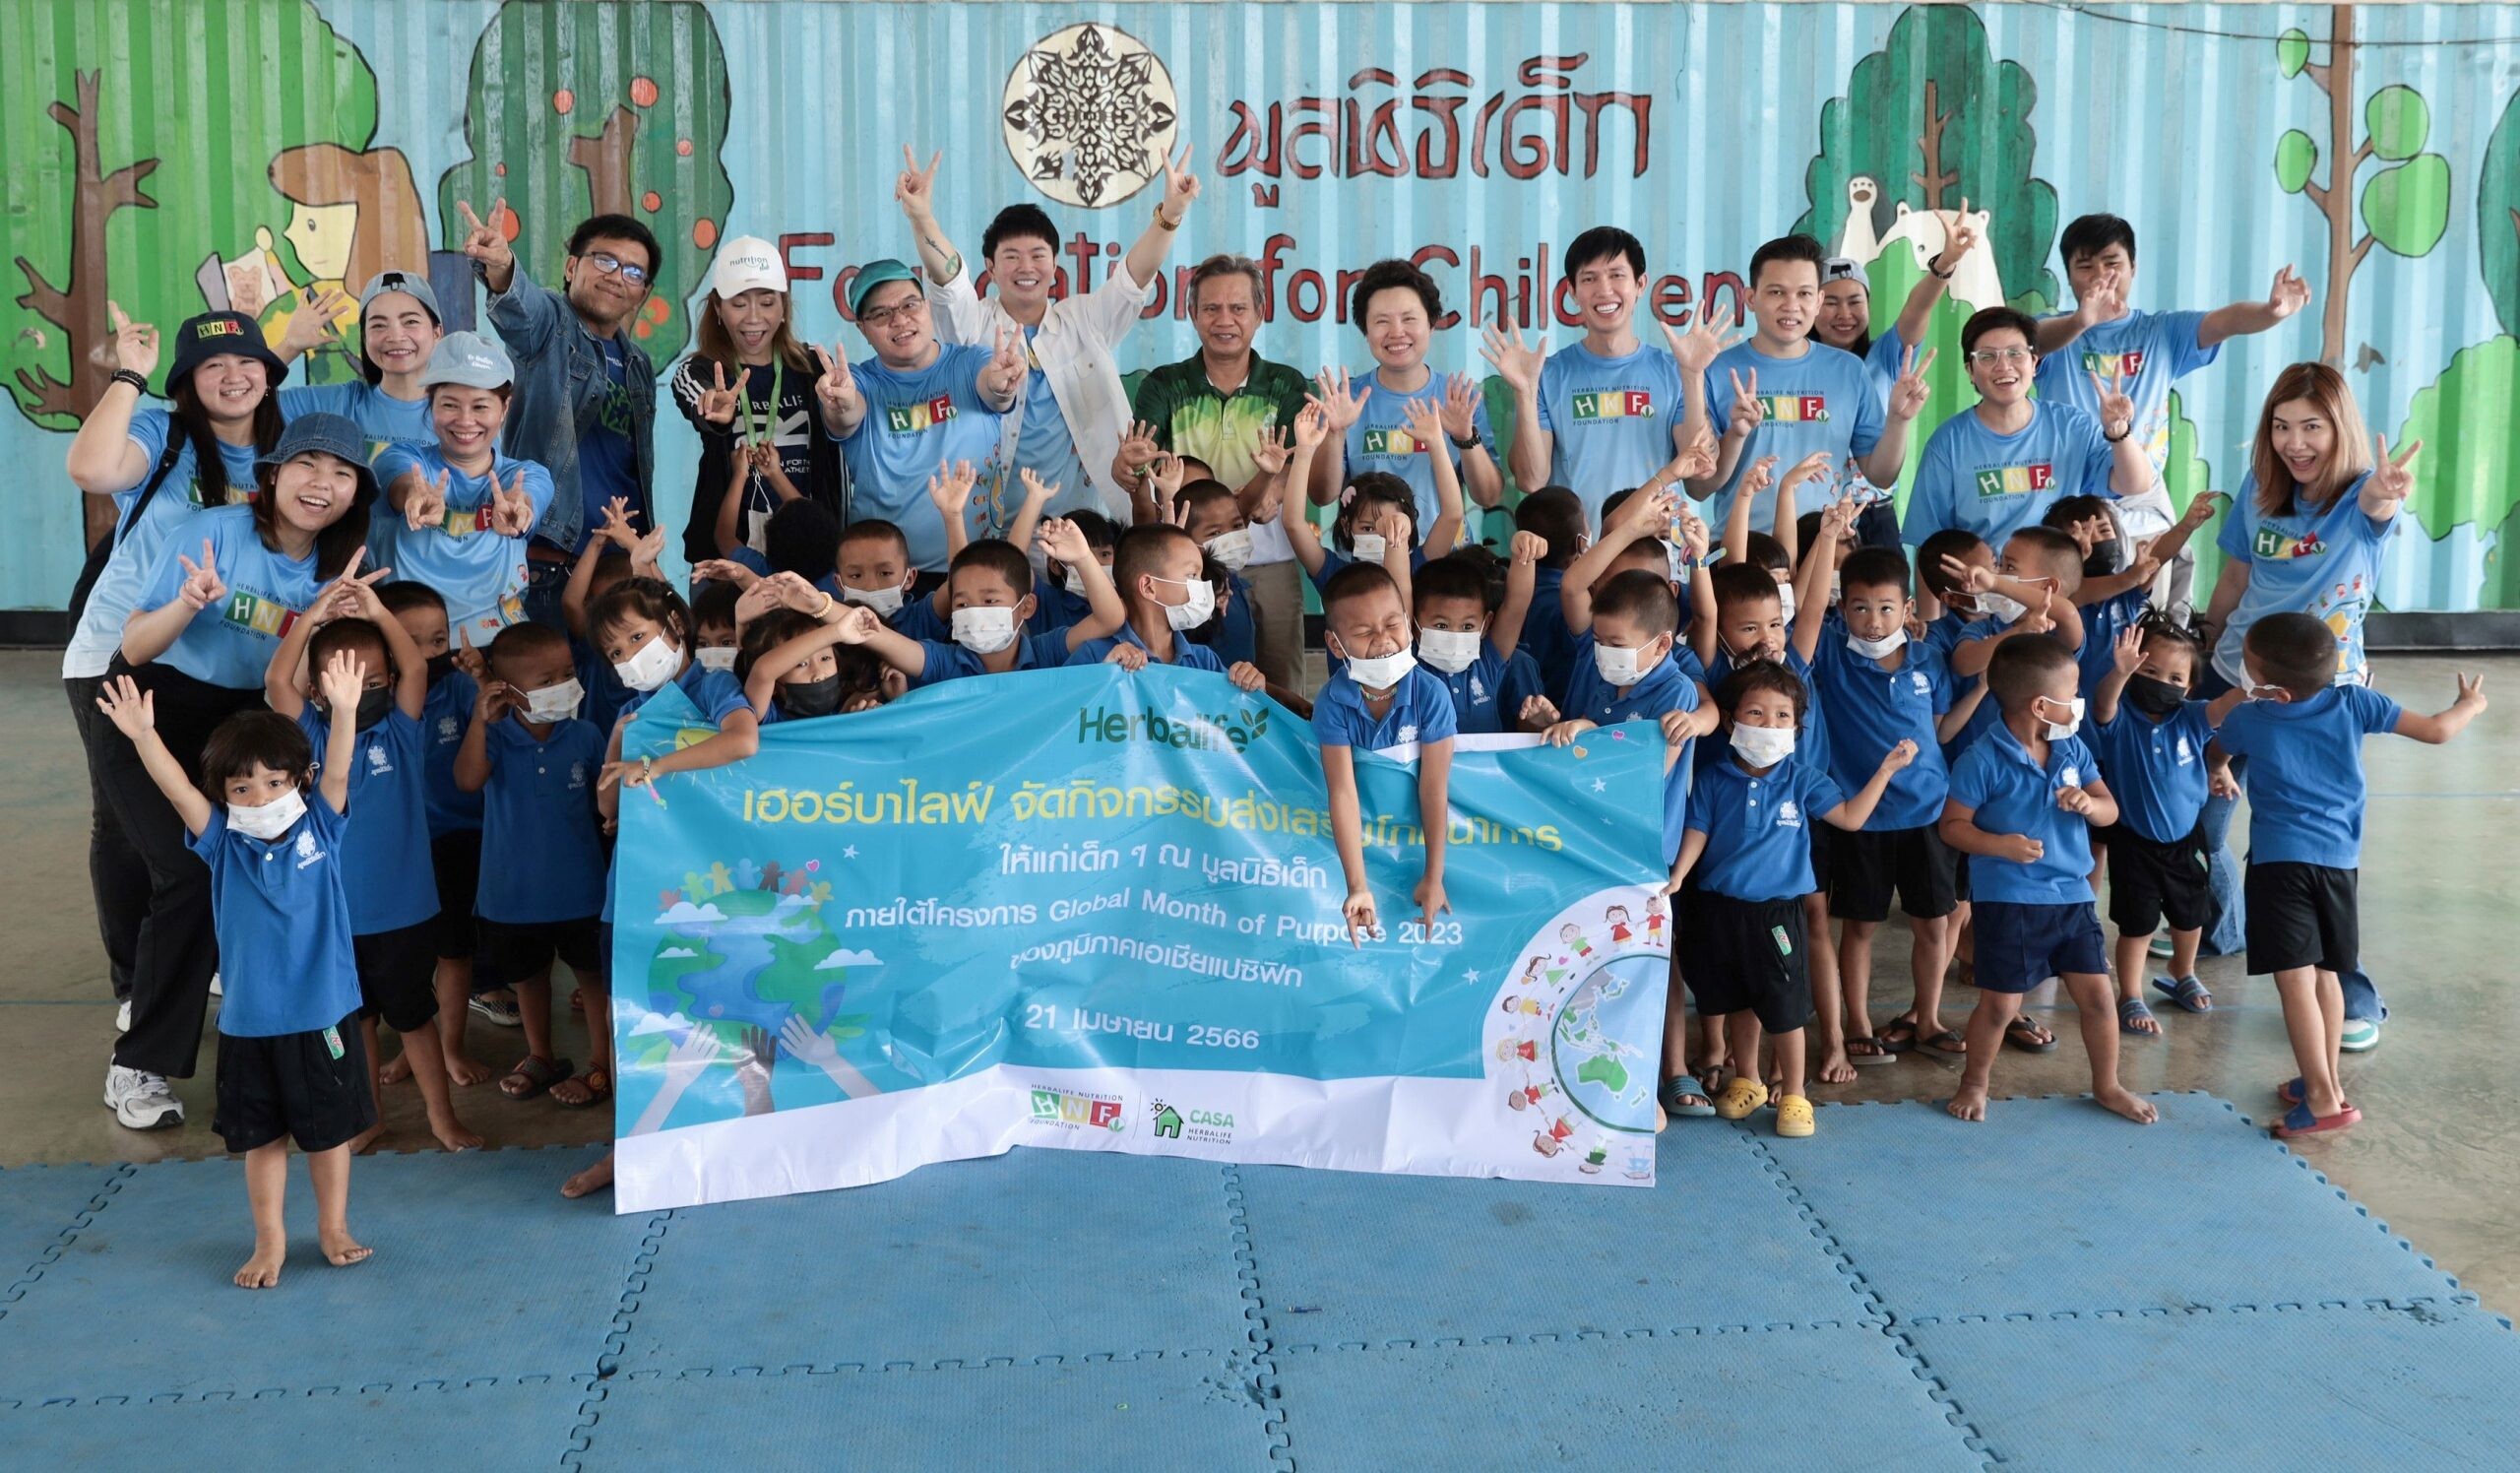 "เฮอร์บาไลฟ์ ประเทศไทย" มุ่งส่งเสริมความรู้ด้านโภชนาการให้กับเด็ก ชวนพนักงานและสมาชิกร่วมกิจกรรมเพื่อสังคม "Global Month of Purpose 2023" ที่มูลนิธิเด็ก